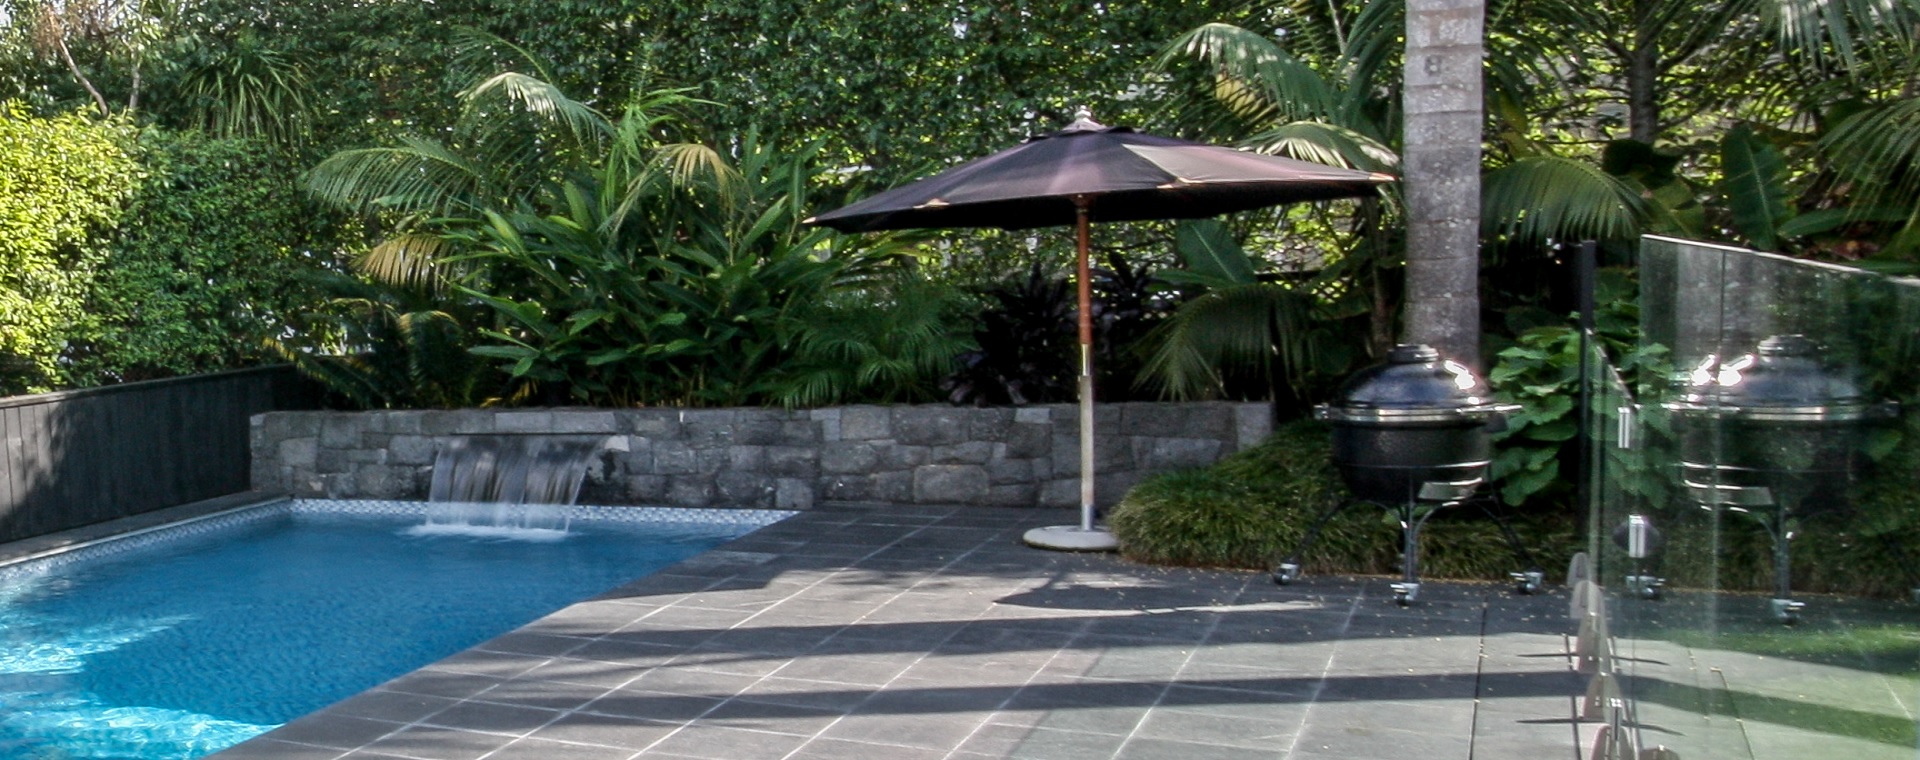 Pool area with umbrella, BBQ and hidden outdoor rock speakers in the garden